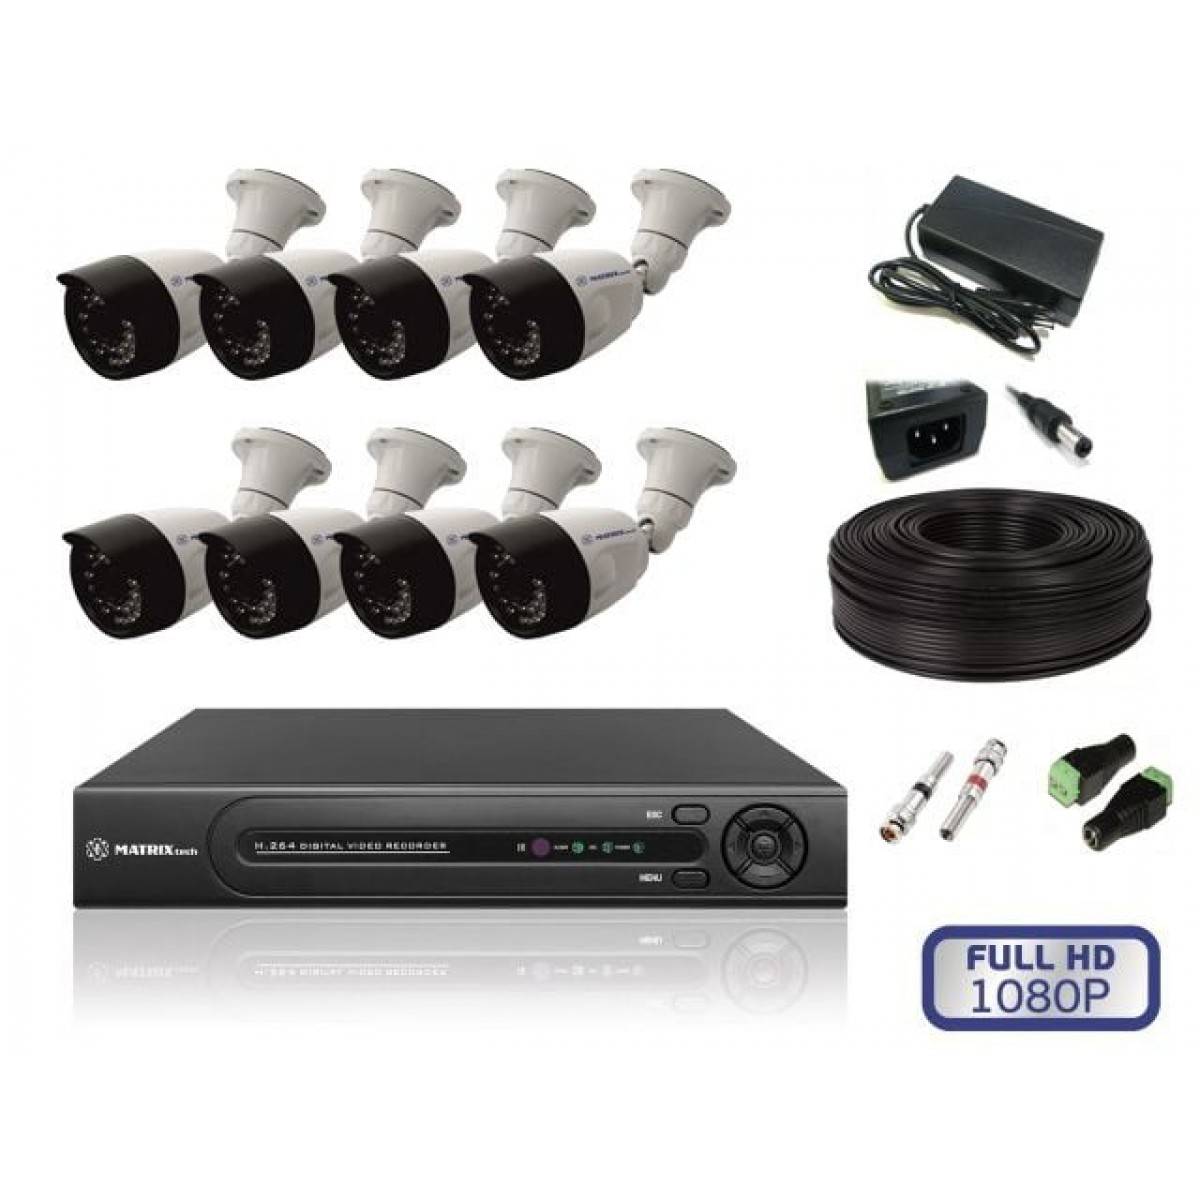 Регистратор на 8 камер. Комплект видеонаблюдения Eseeco ahd4013 4 камеры. Комплект видеонаблюдения Hikvision на 8 камер. Комплект видеонаблюдения DVR 7204c1 с 4 видеокамерами. Комплект видеонаблюдения Hikvision на 4 камеры IP.